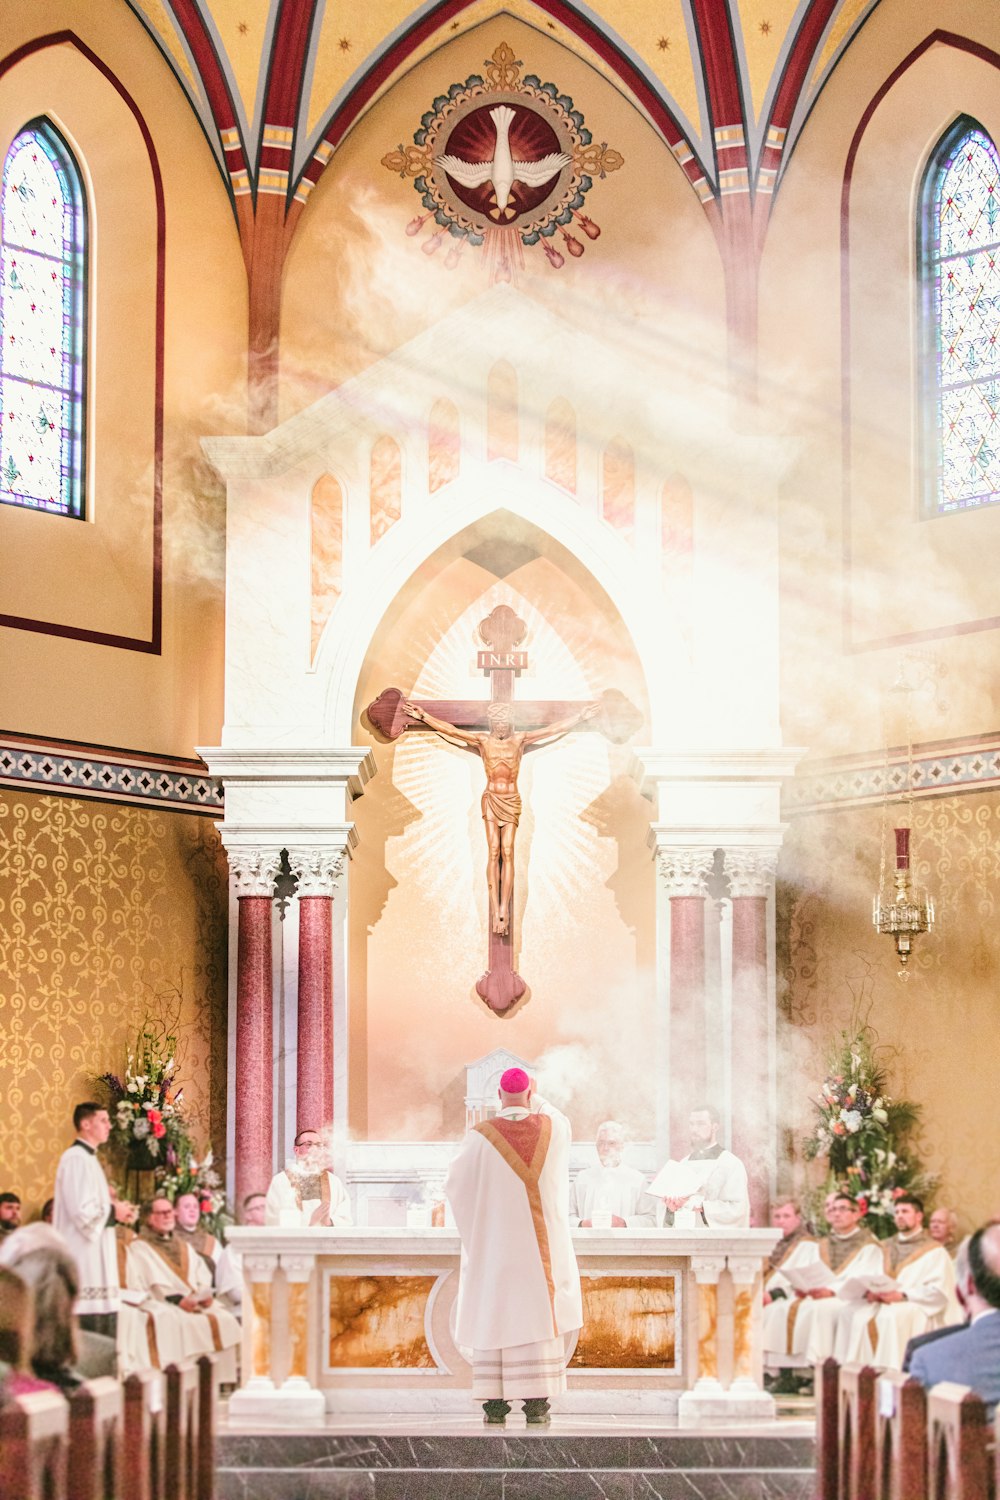 Un prêtre debout à l’autel d’une église